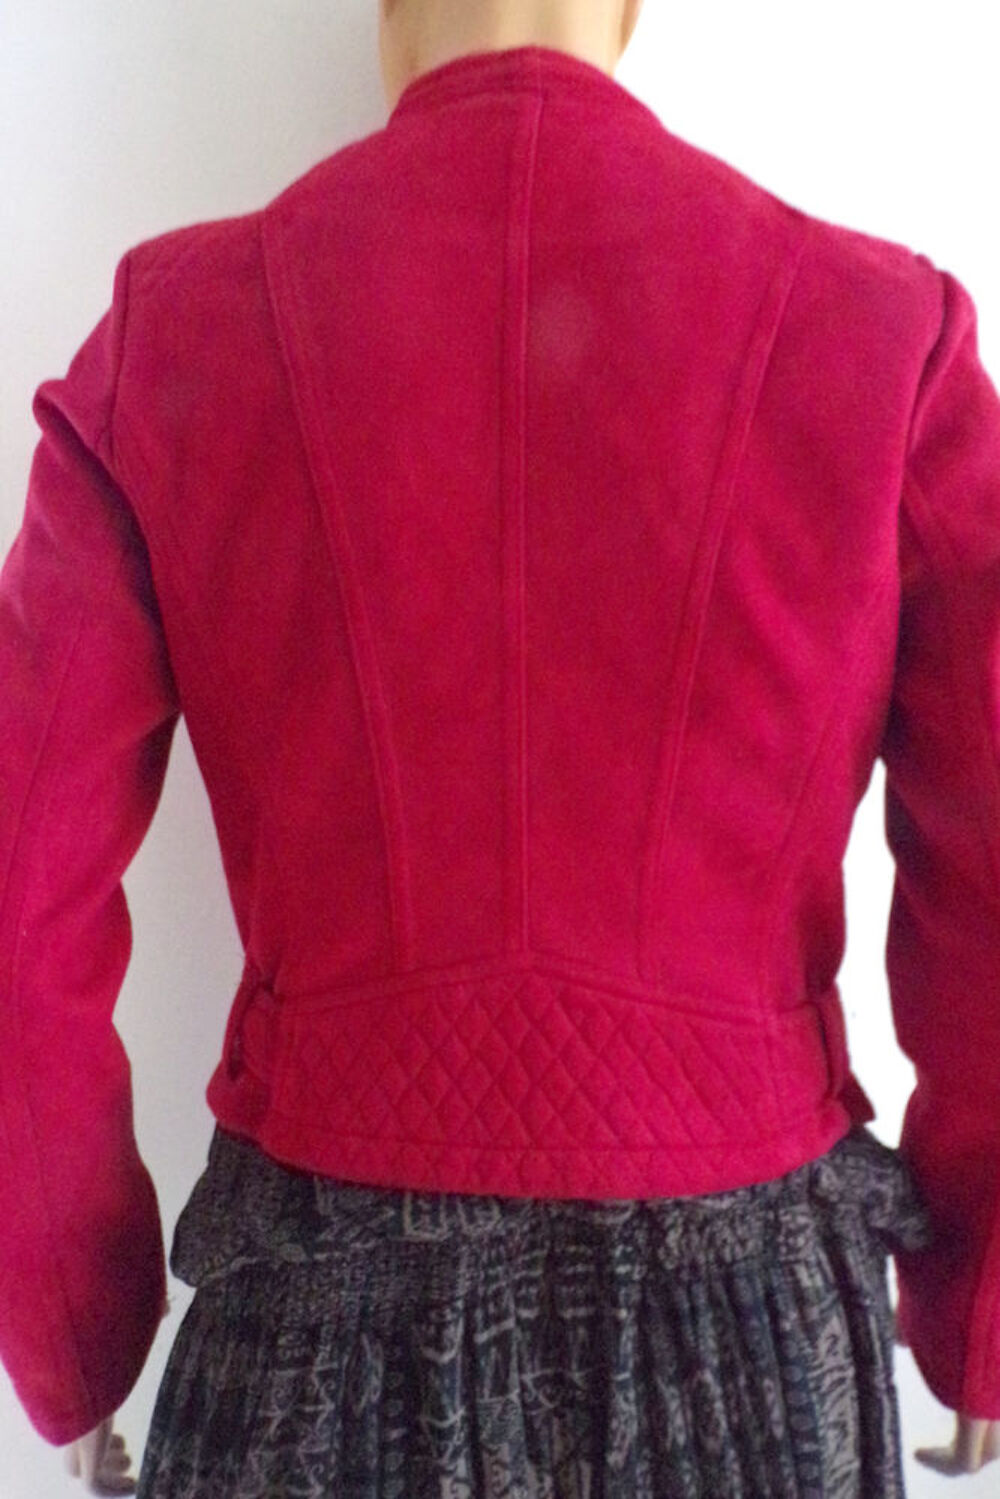 Veste blouson Perfecto rouge Woman Collection taille 40 Vtements